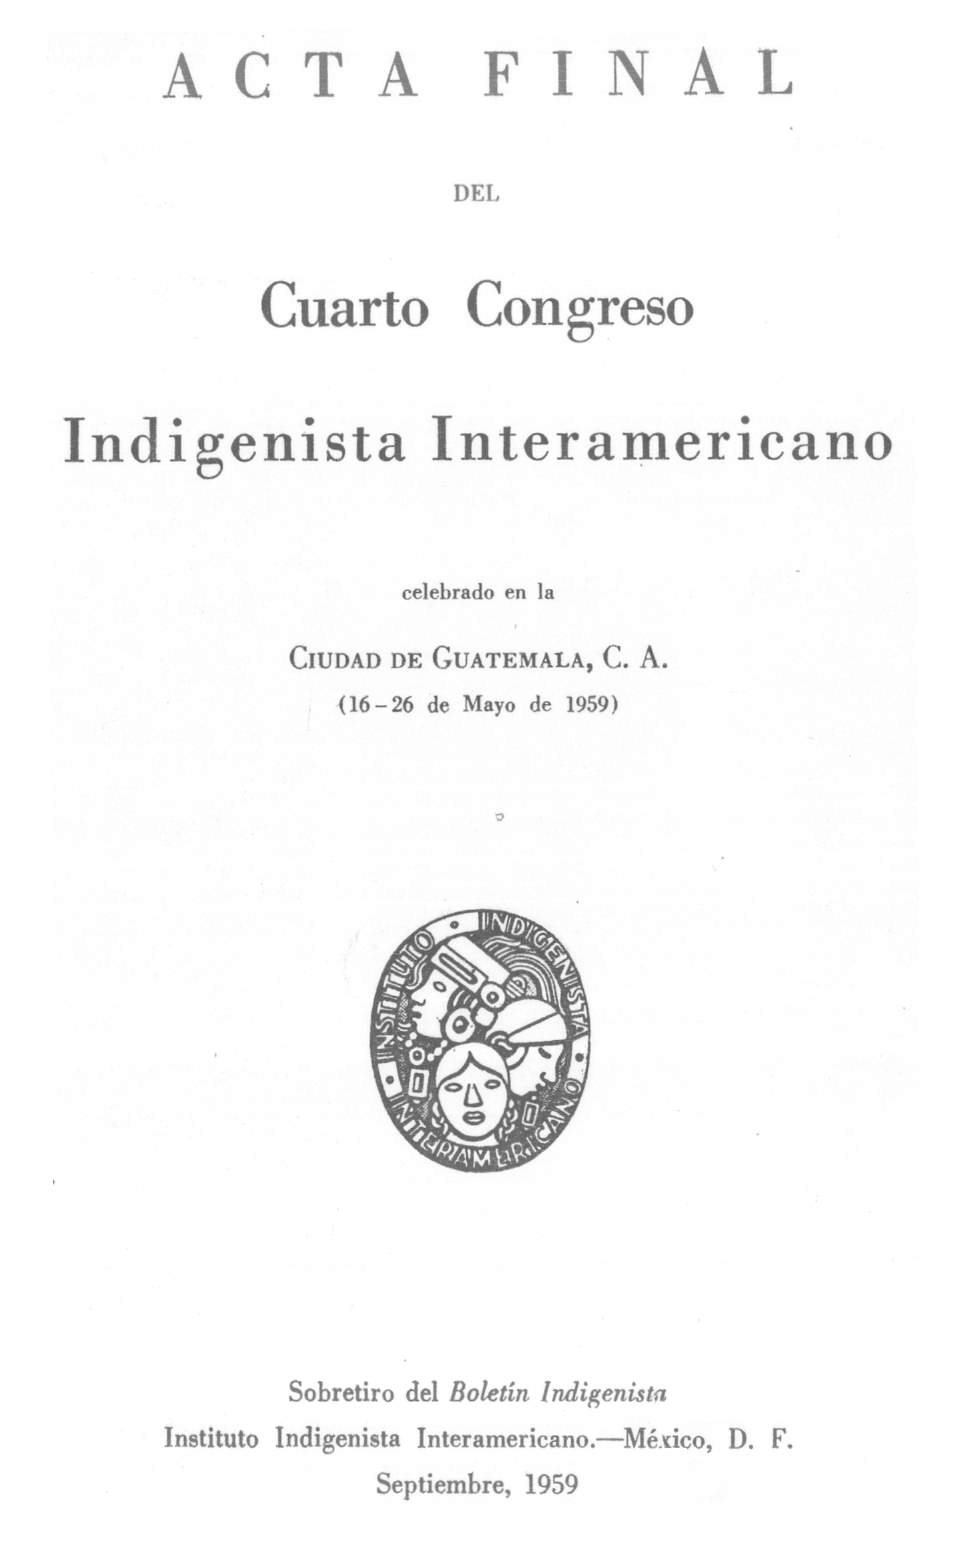 Acta Final del Cuarto Congreso Indigenista Interamericano /